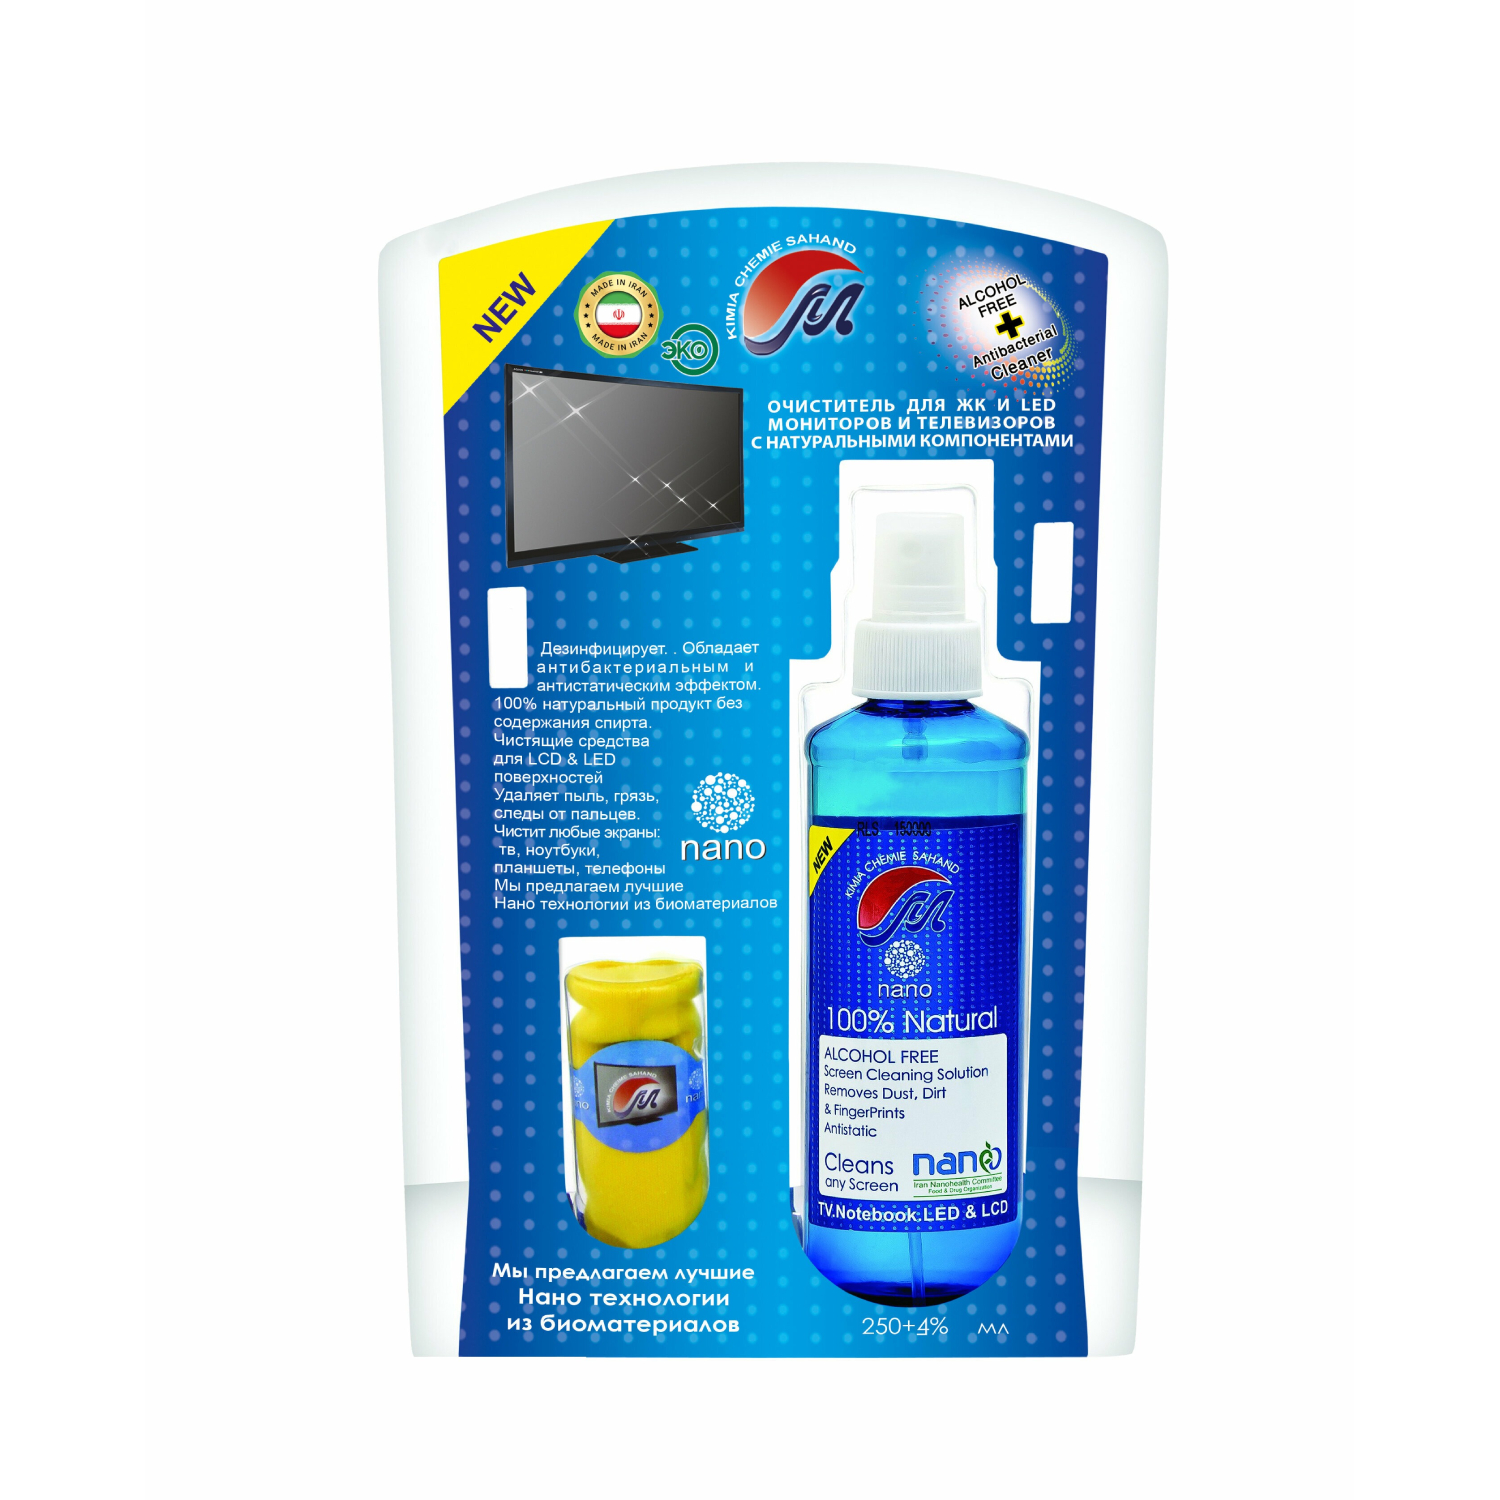 Очиститель Mehrtash для ЖК и LED мониторов и телевизоров с натуральными компонентами 250 мл цена и фото